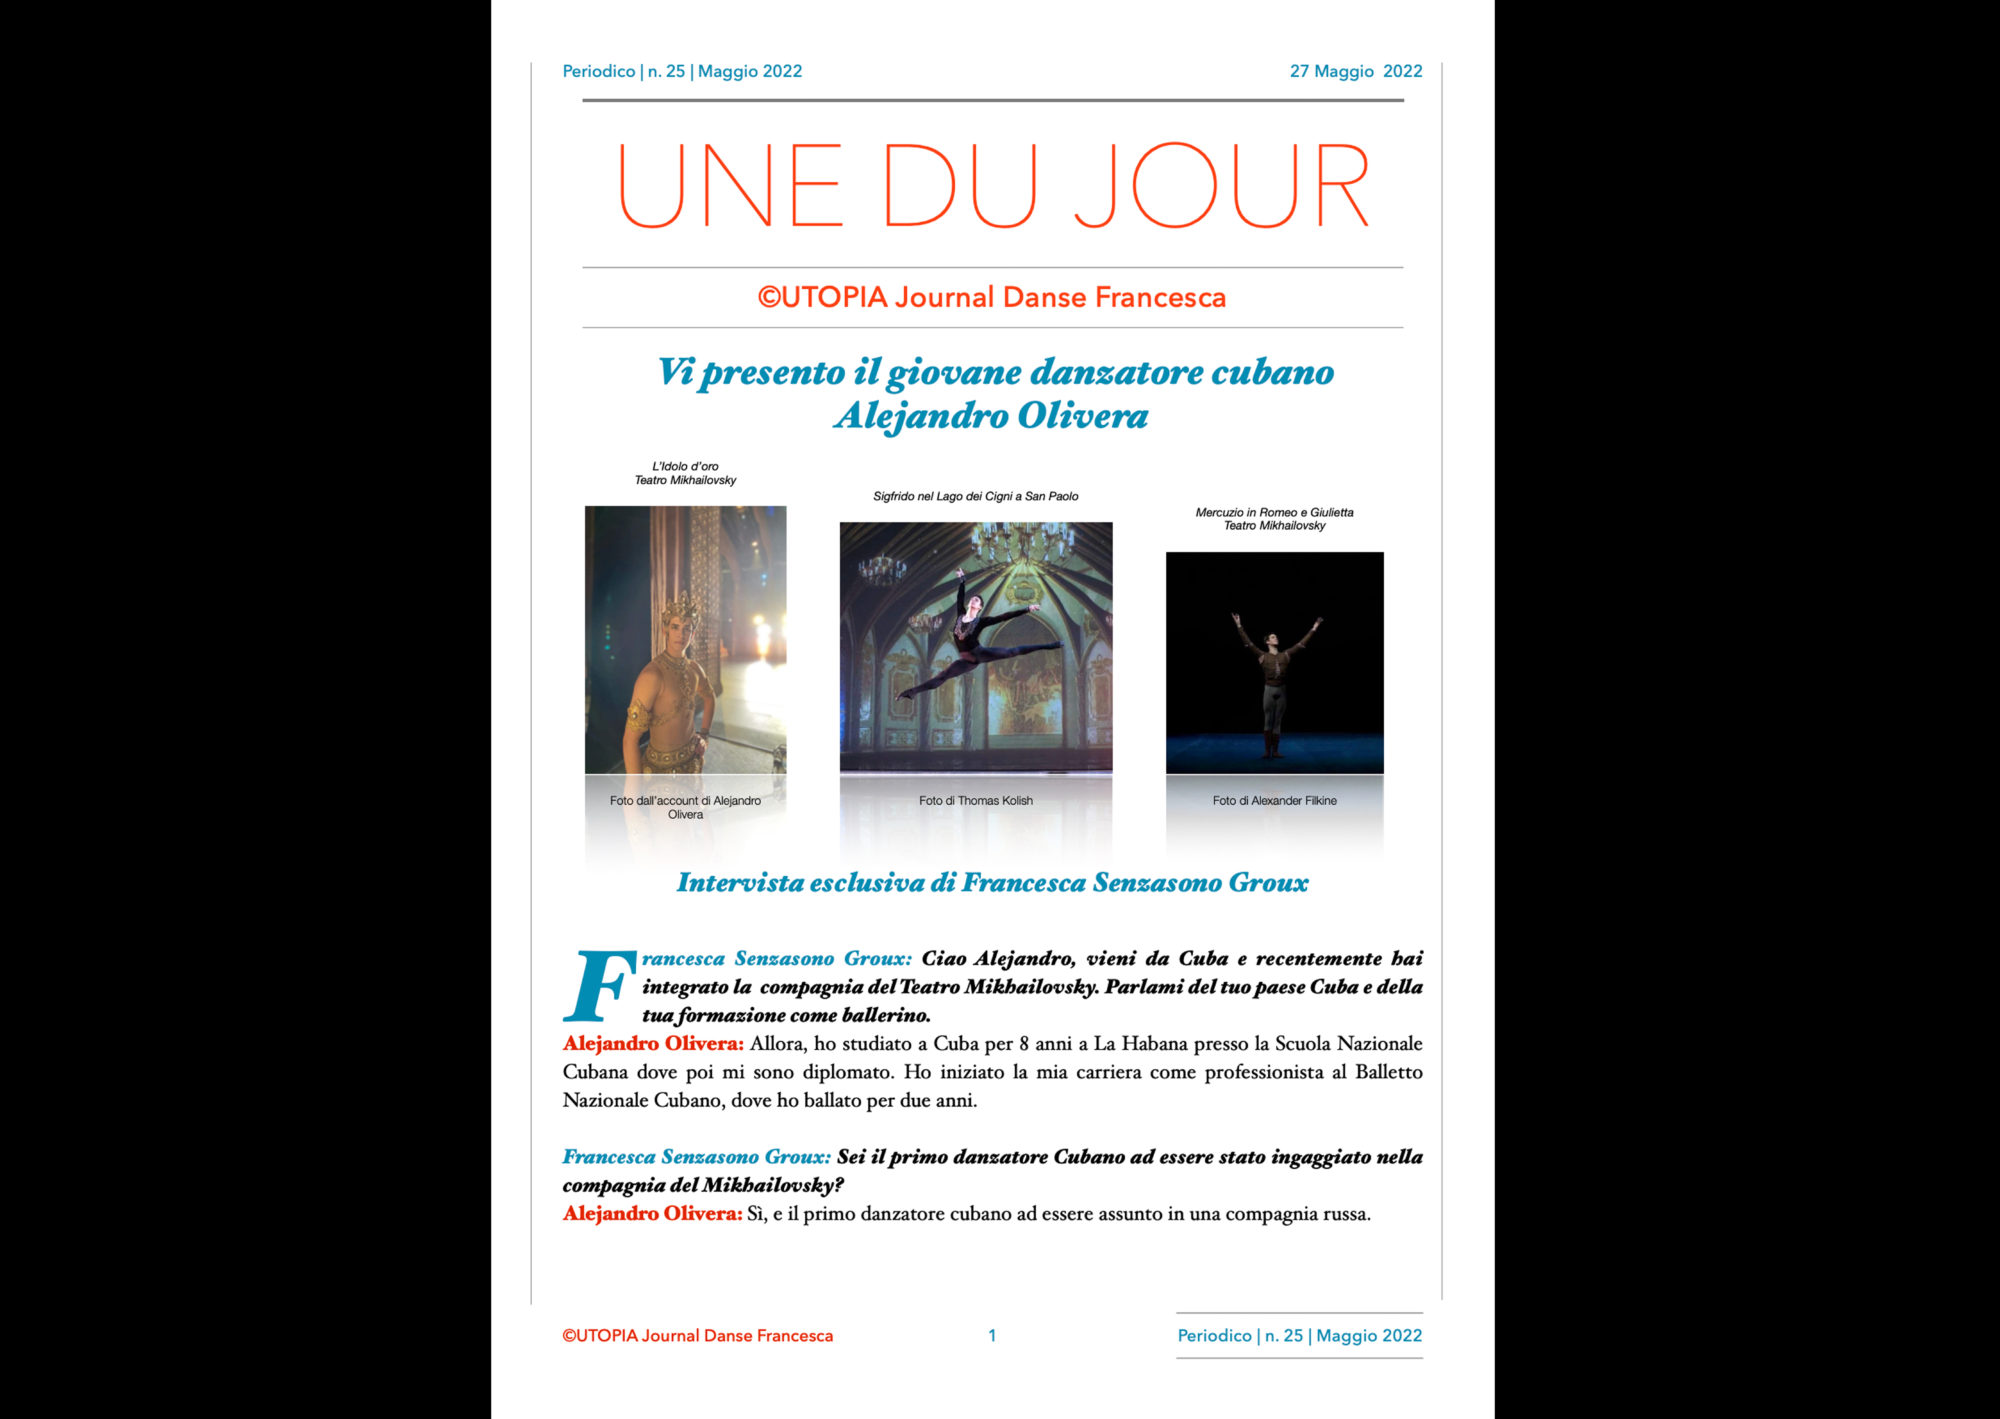 Utopia Journal Danse Francesca Periodico n.25-27 Maggio 2022 pagina 1